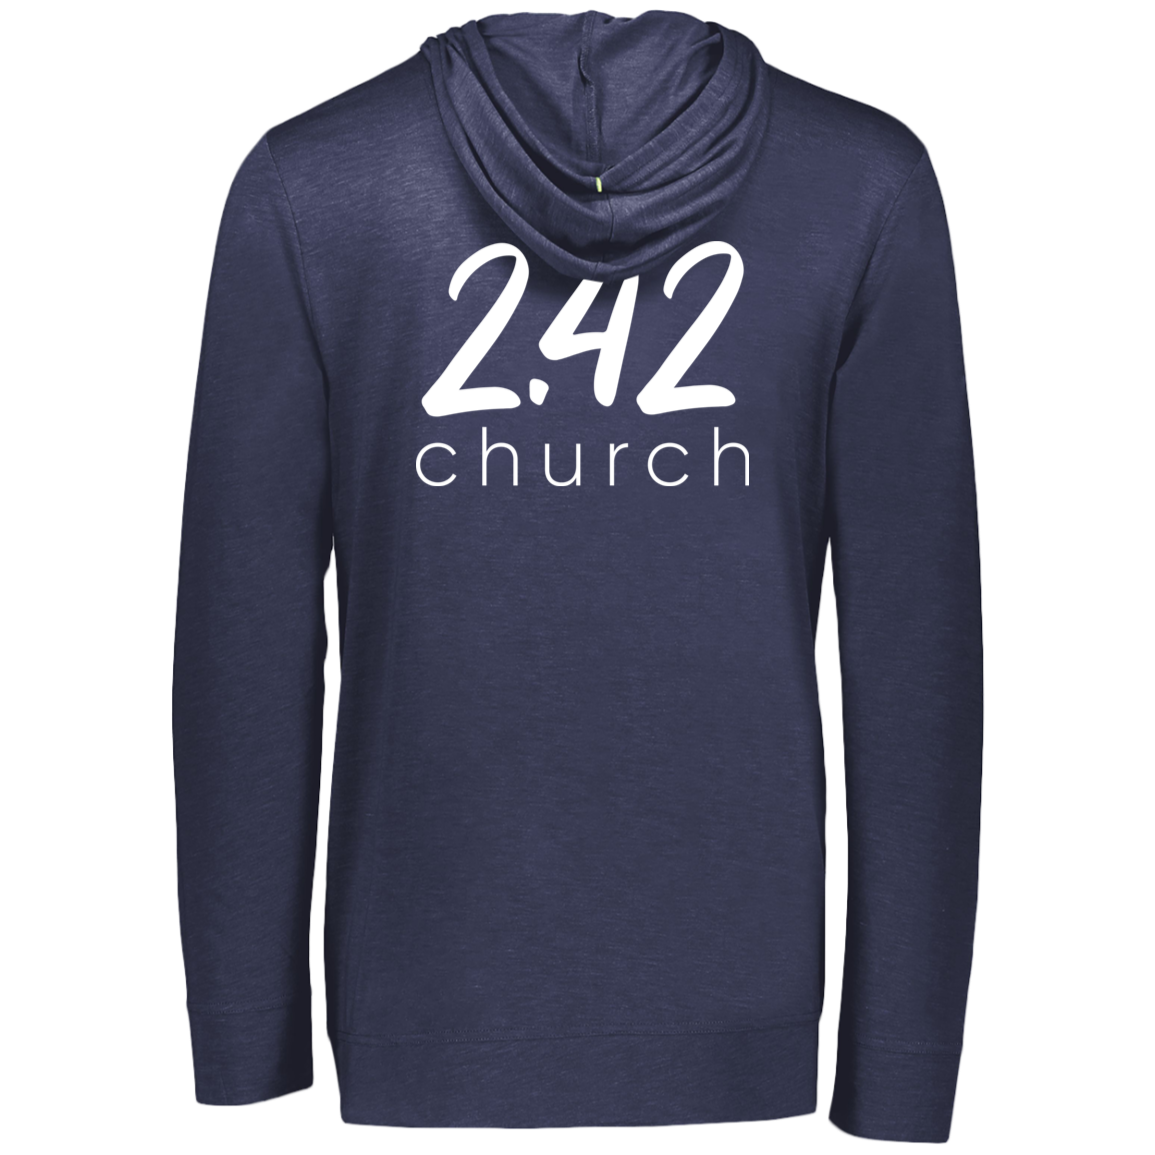 2.42 Church Hoodies - White Logo